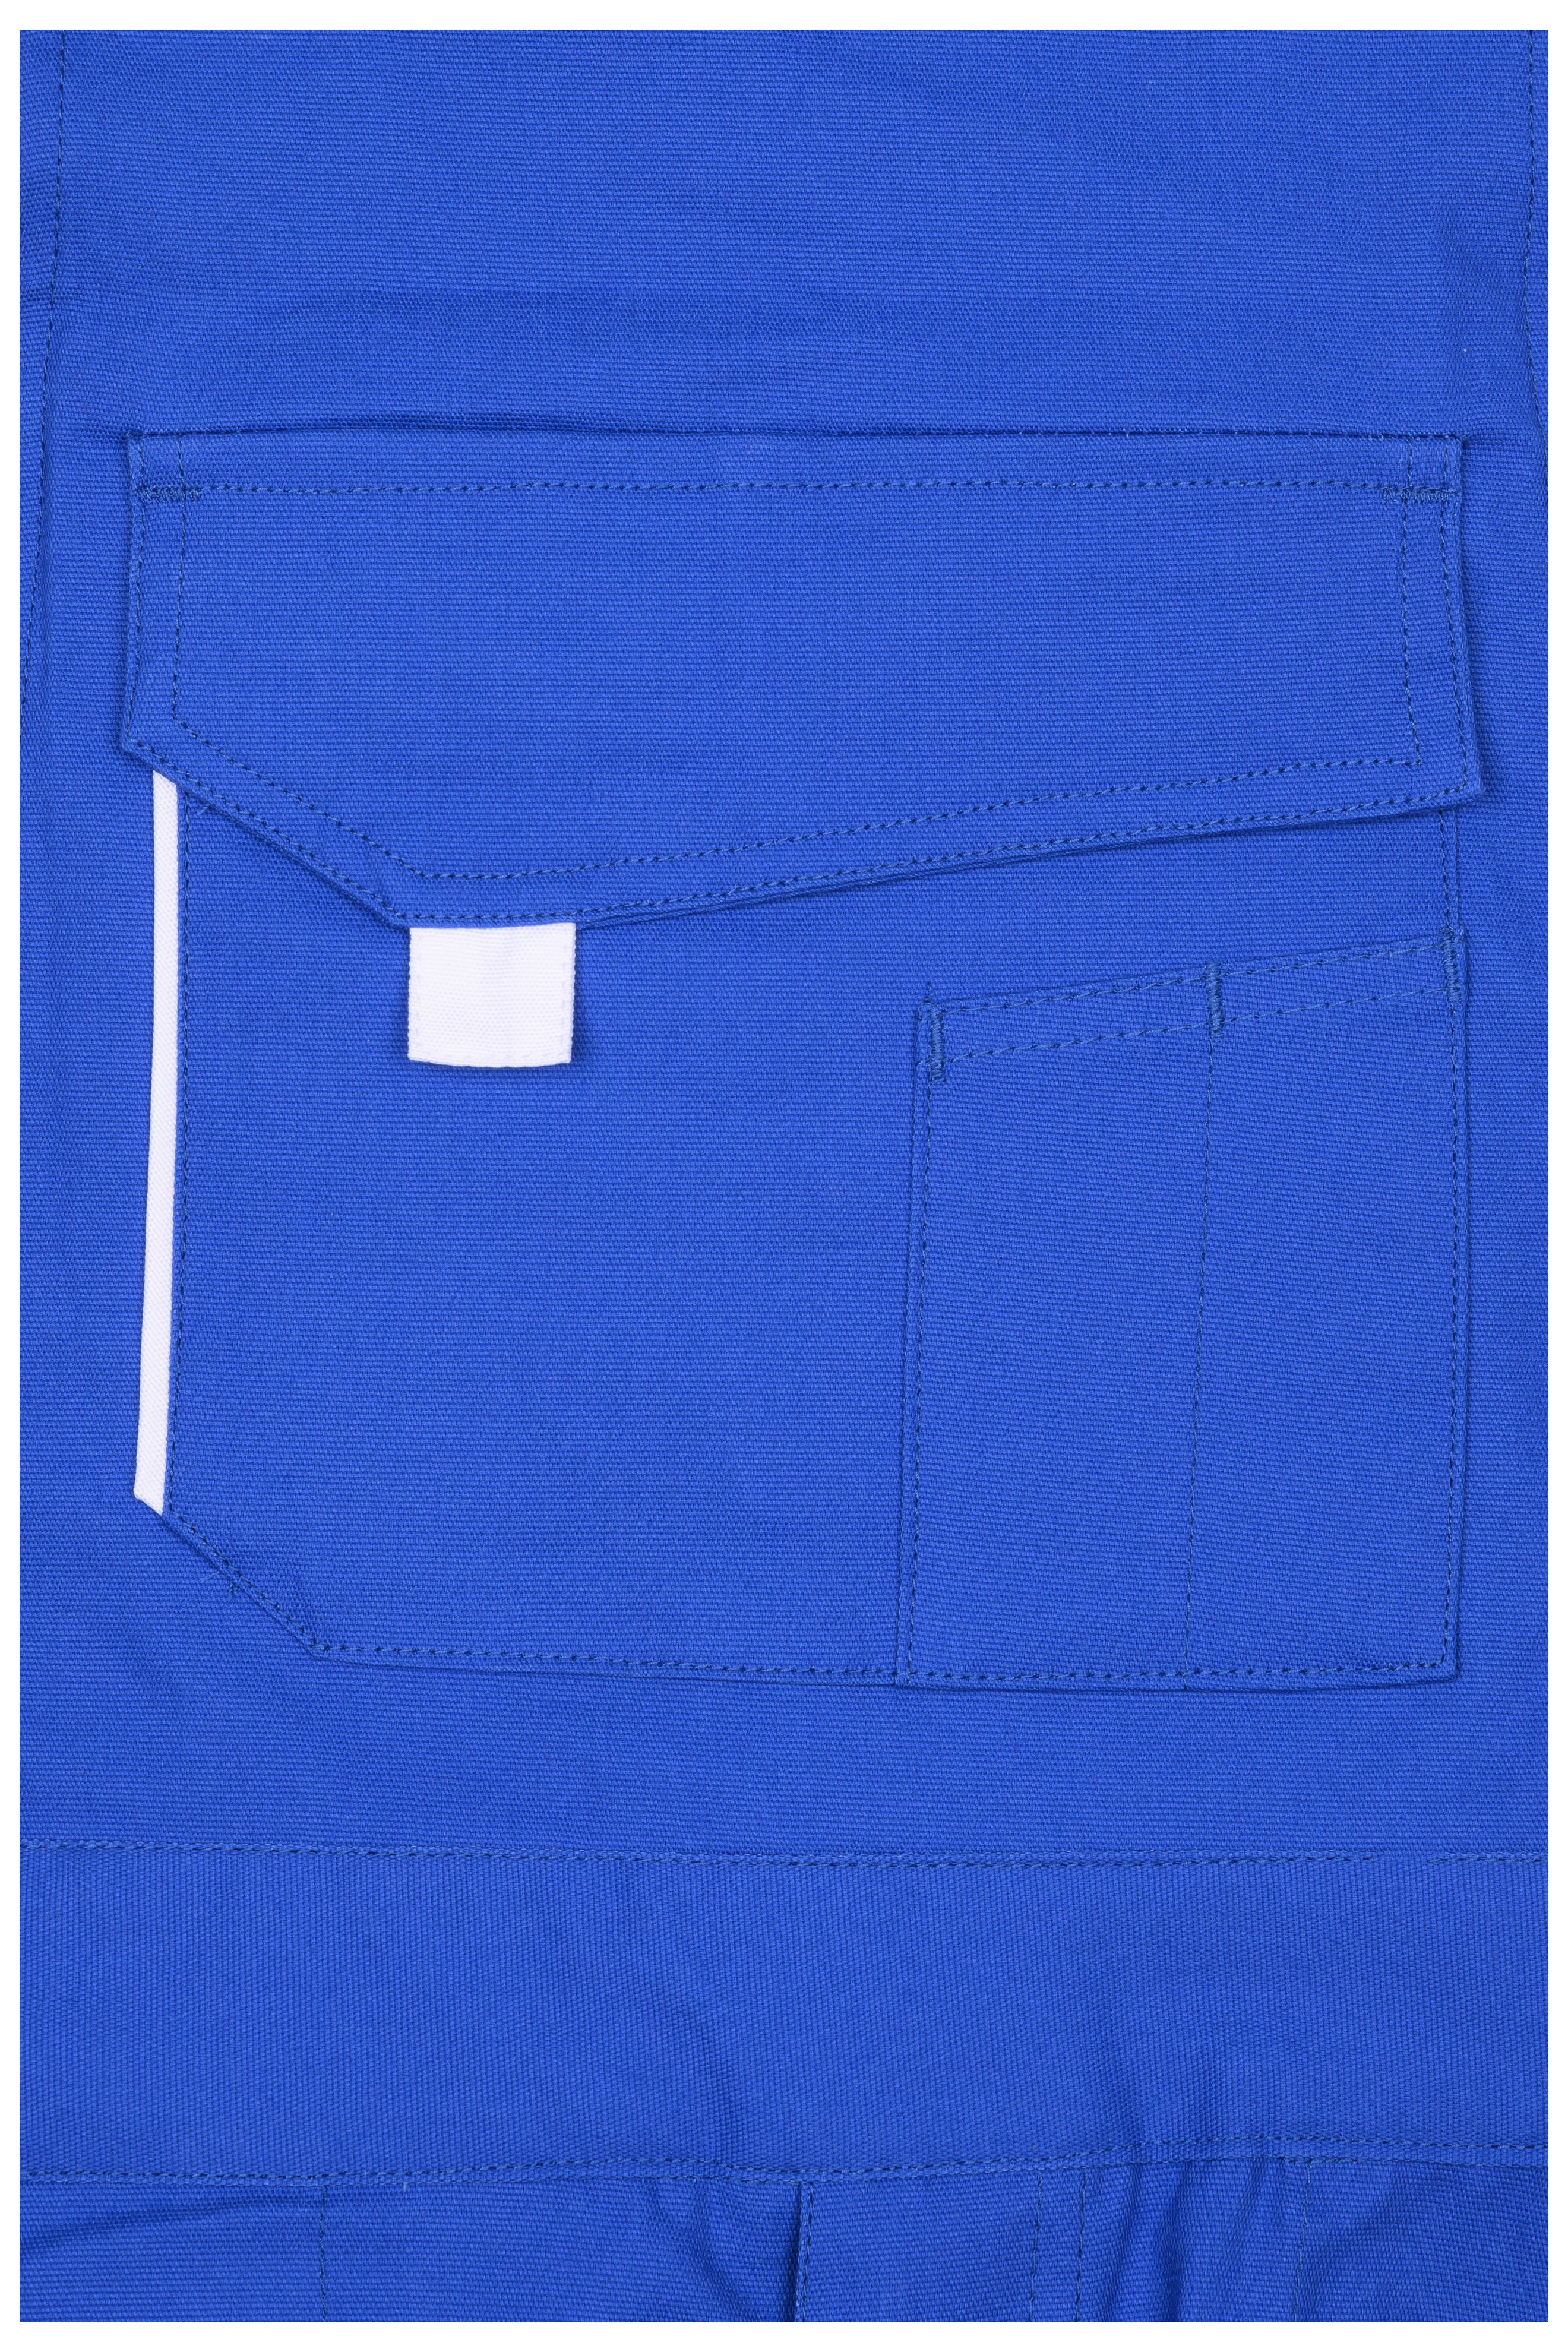 Workwear Pants with Bib - COLOR - JN848 Funktionelle Latzhose im sportlichen Look mit hochwertigen Details